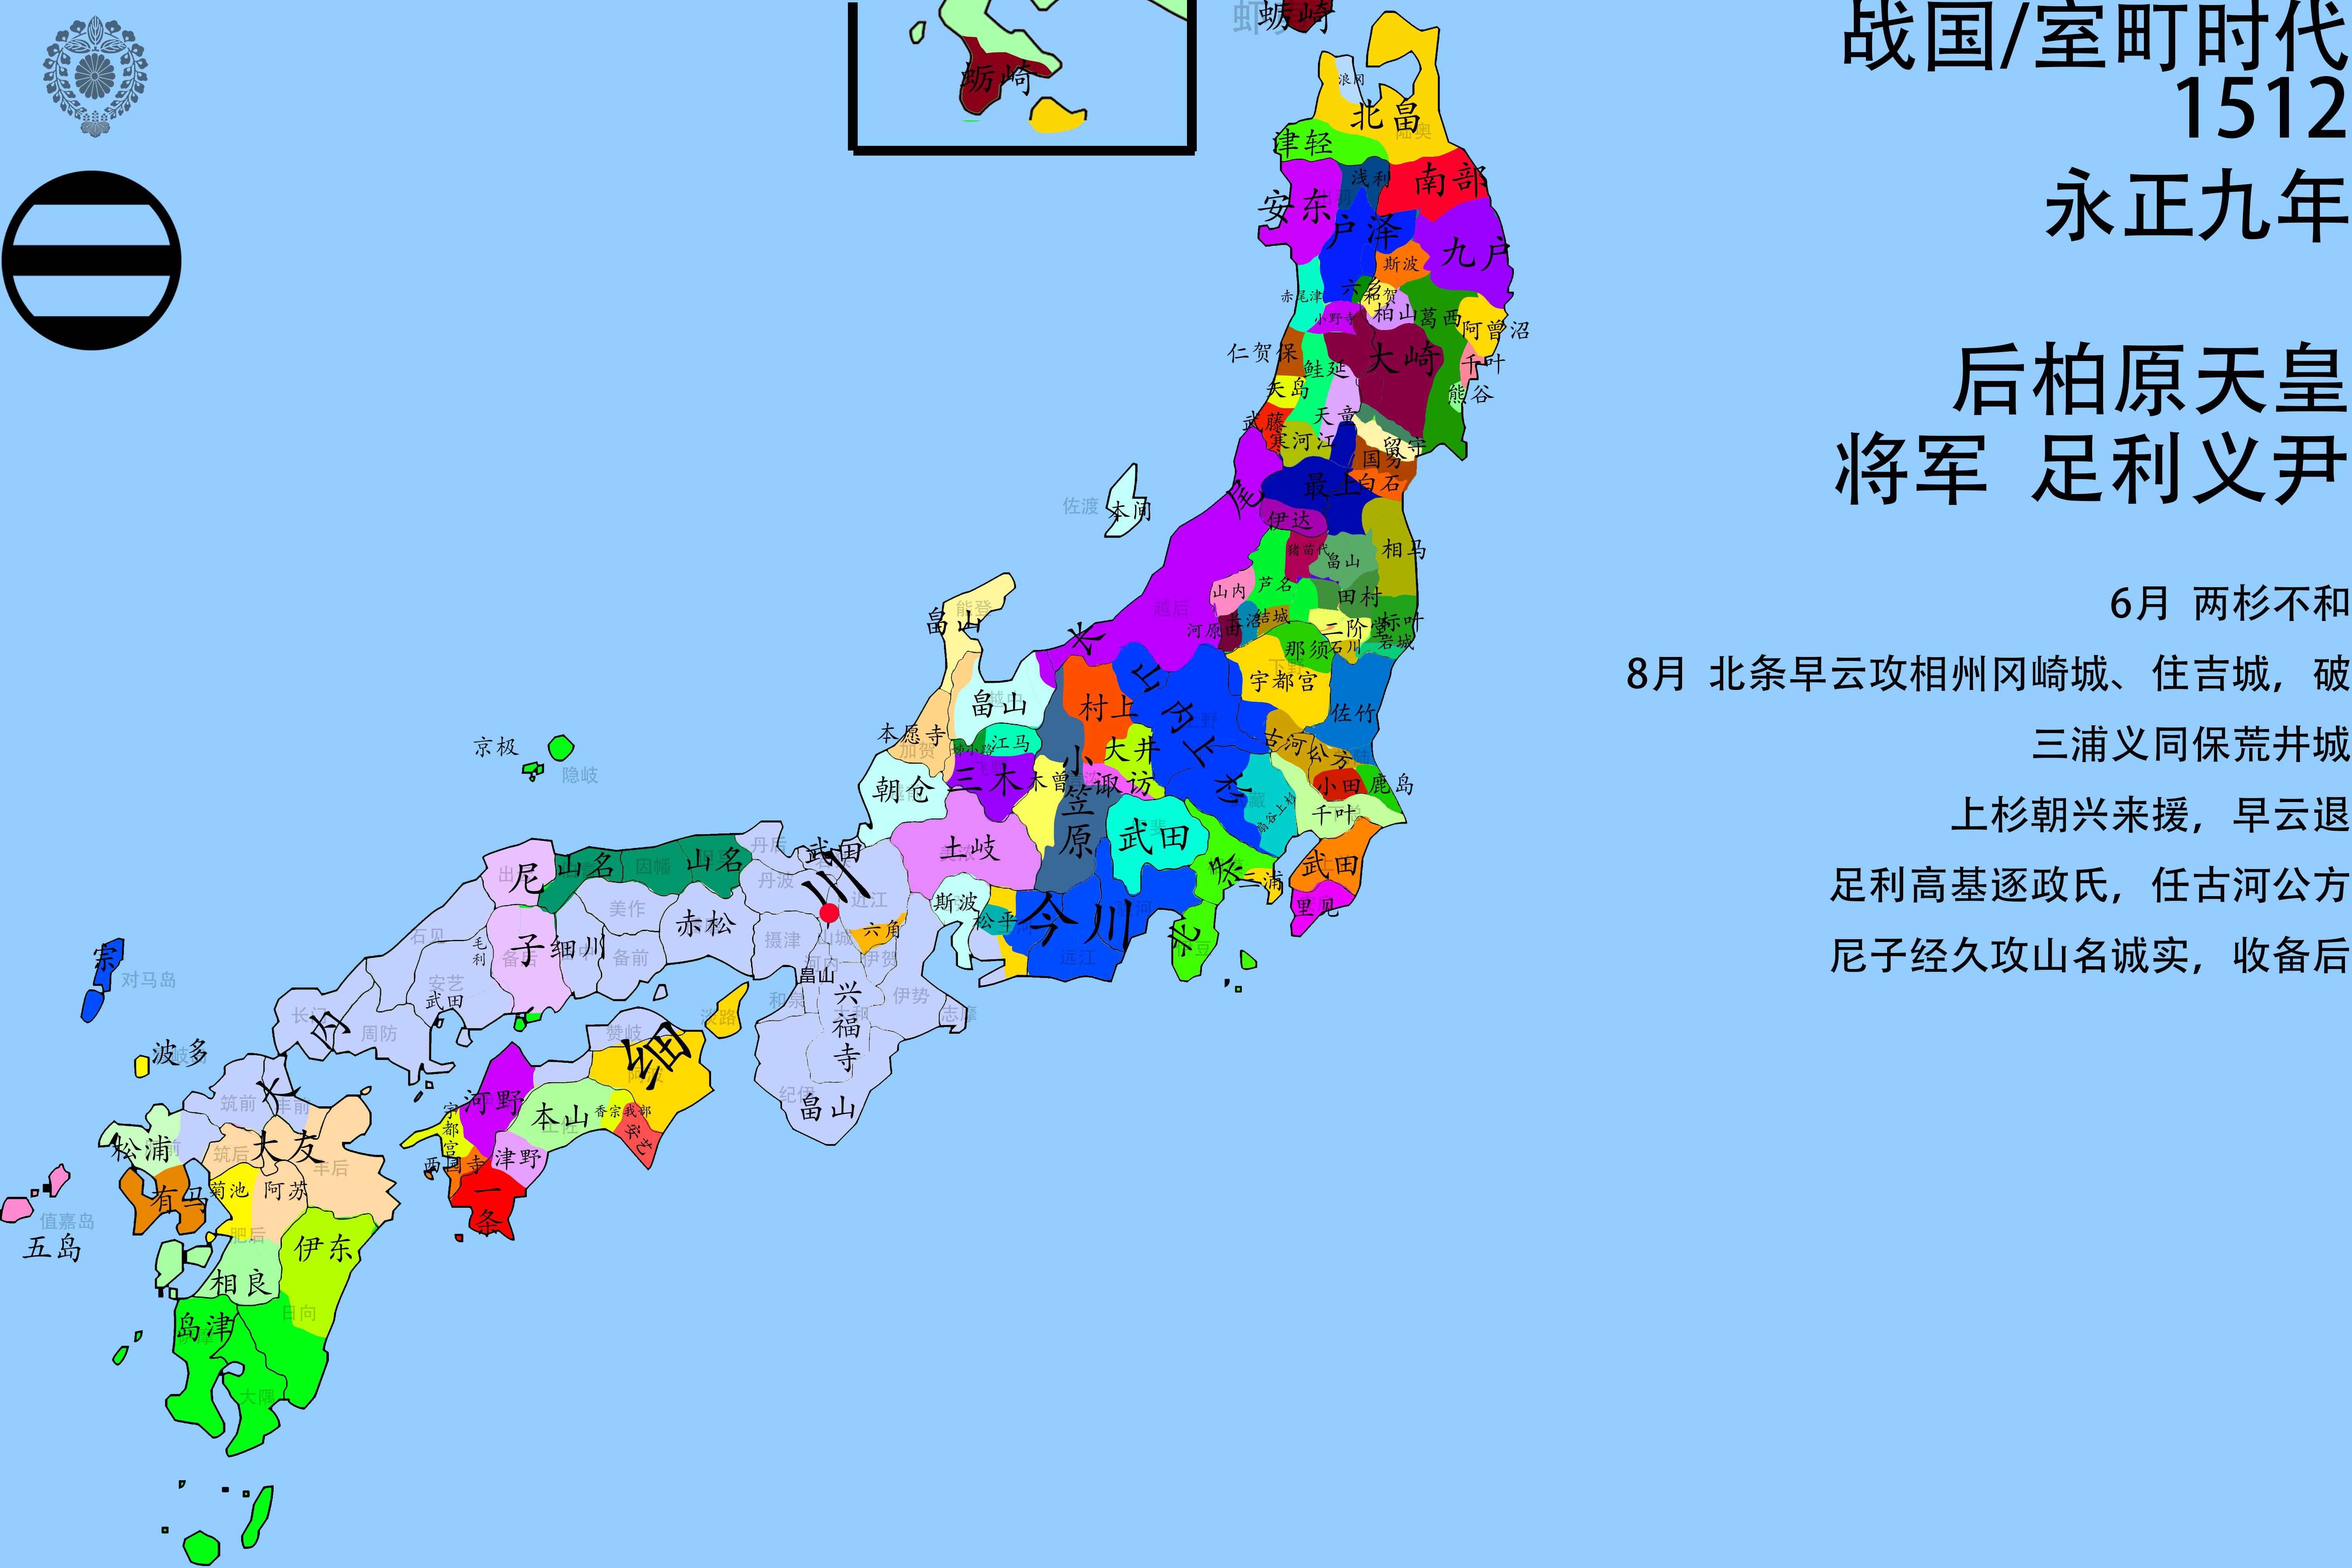 【史图馆】日本历史地图之三战国时代(1500~